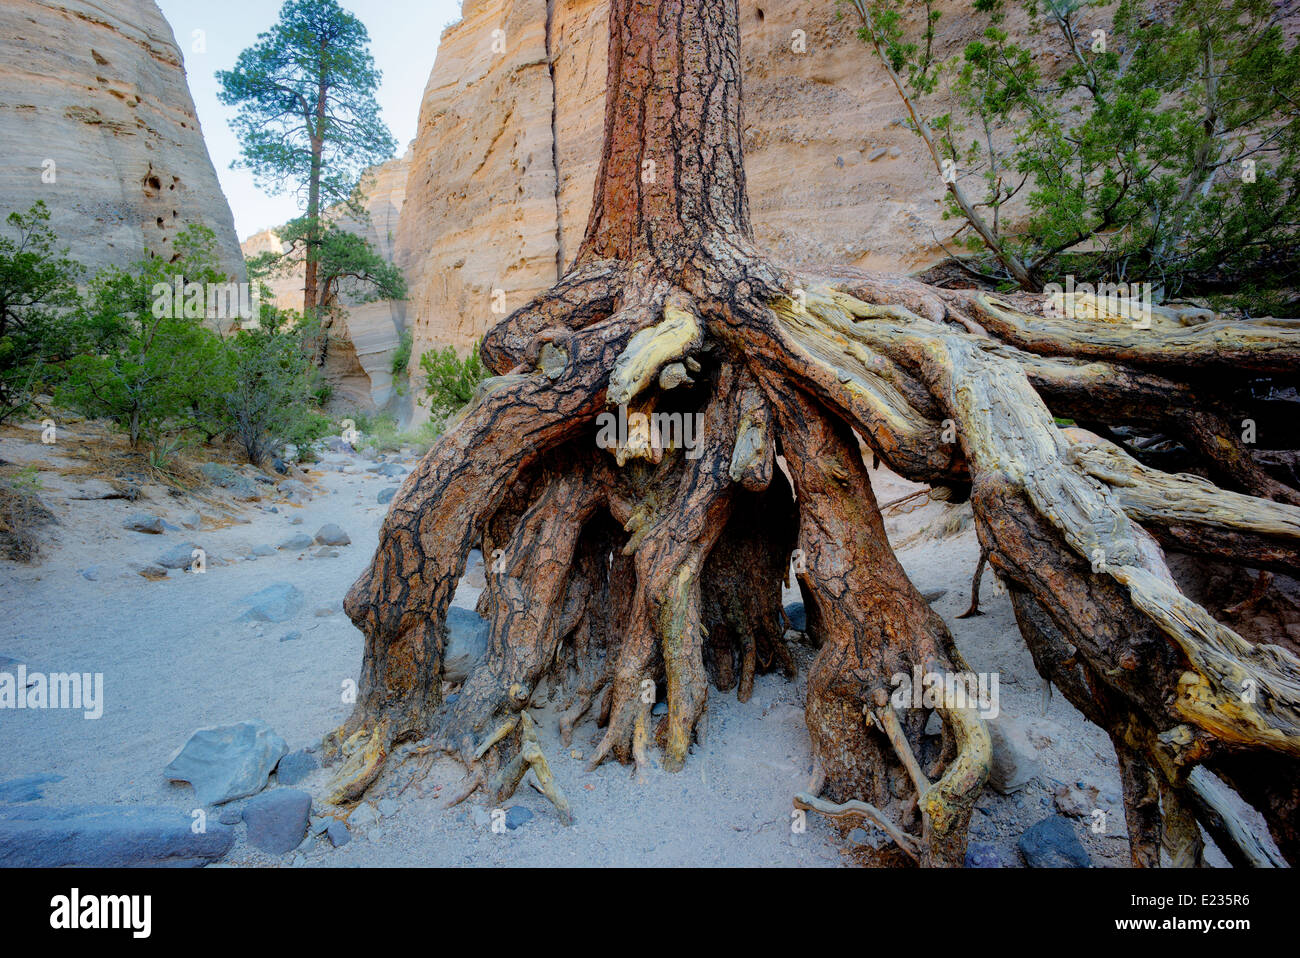 Expone las raíces del pino Ponderosa en Arroyo erosionadas. Tienda rocas monumento nacional. Kasha-Katuwe,Nuevo México Foto de stock